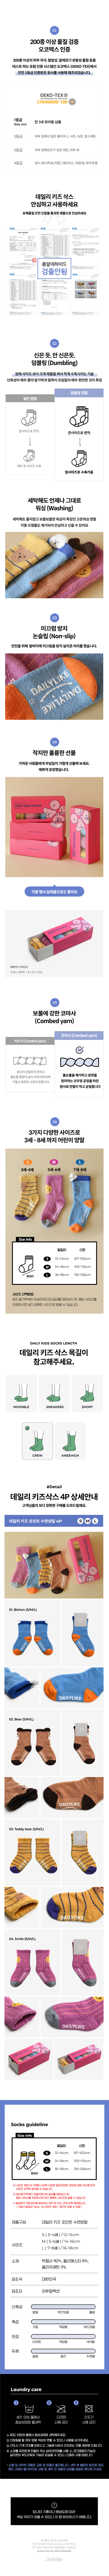 韓國食品-[Dailylike] Kids Bed socks